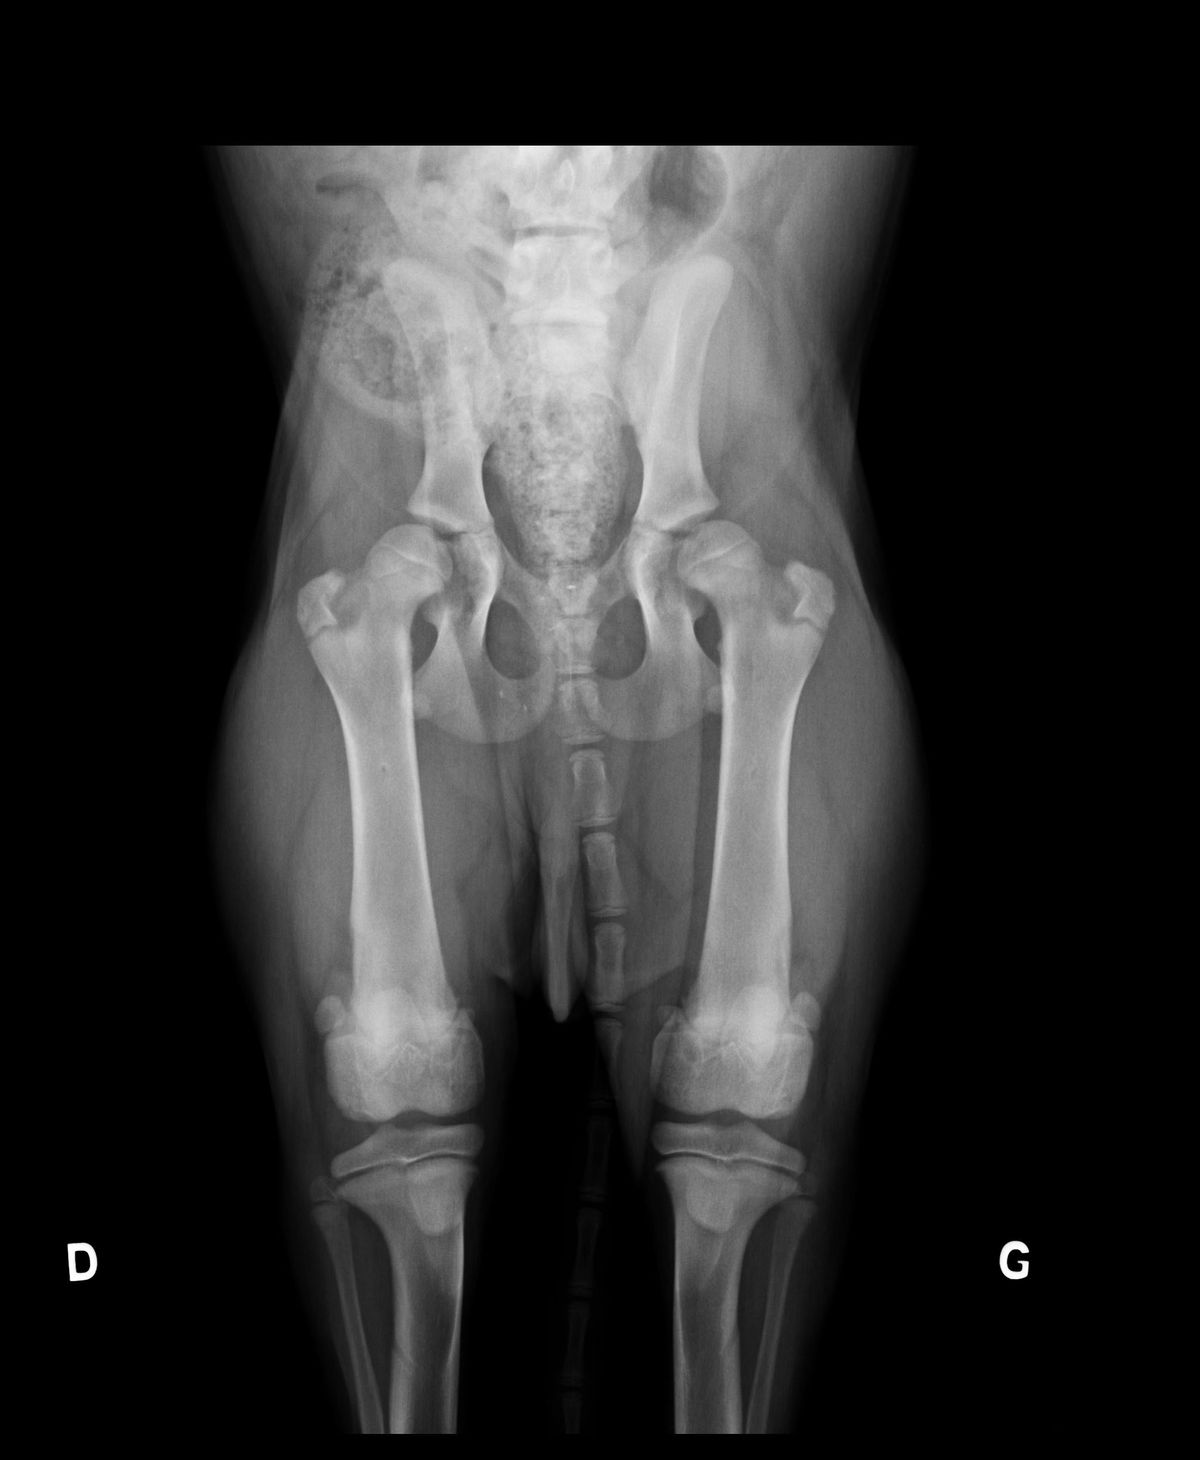 Radiograpie de dépistage précoce de dysplasie en position standard (décubitus dorsal, hanches en extension)